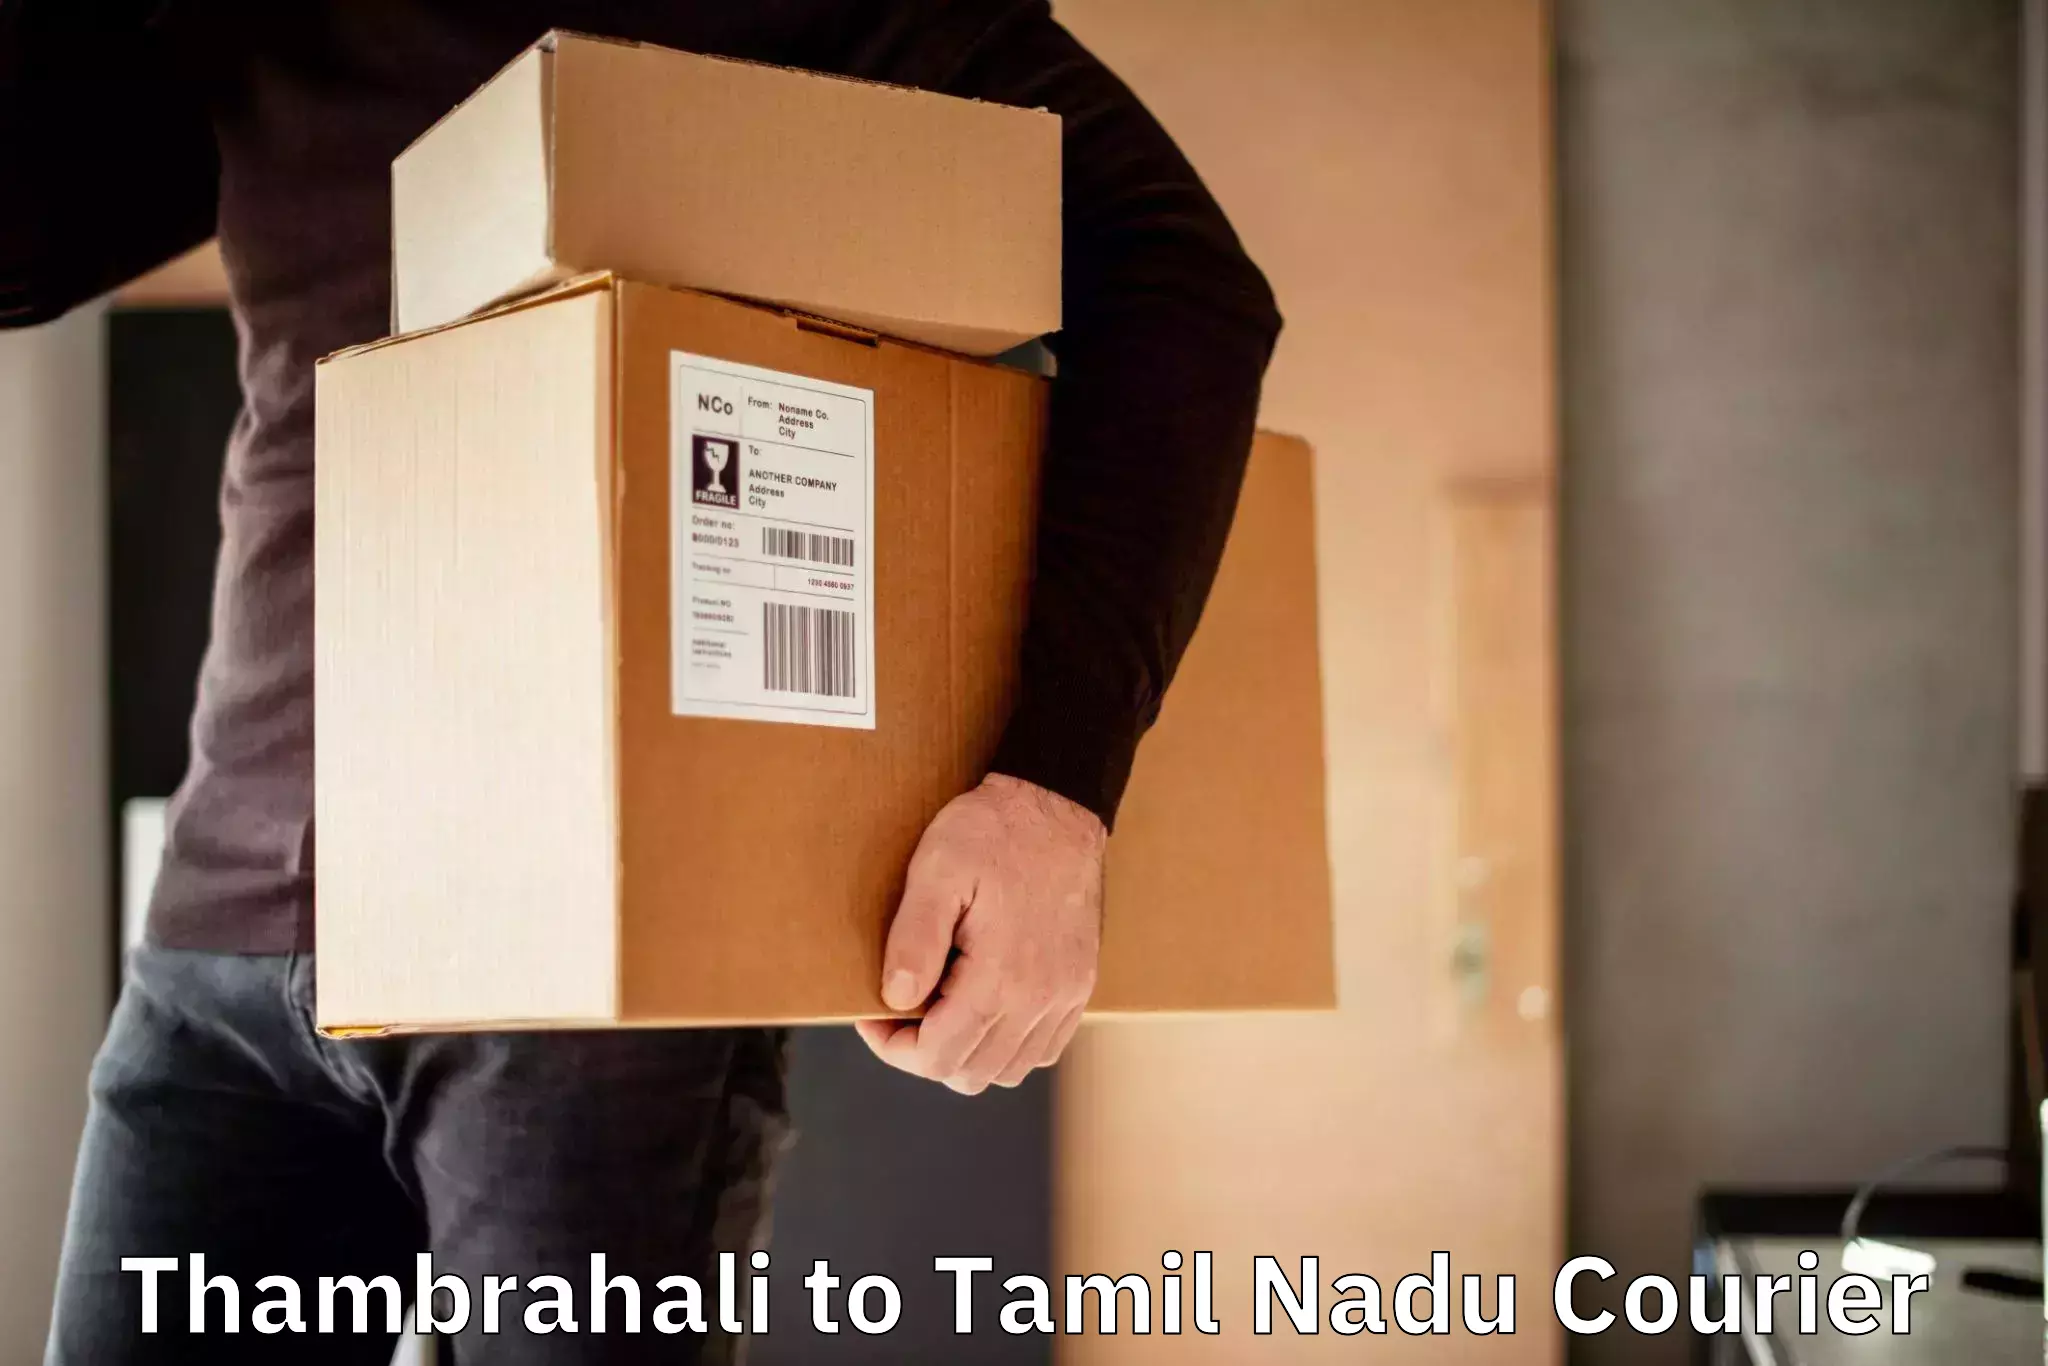 E-commerce logistics support Thambrahali to Tamil Nadu